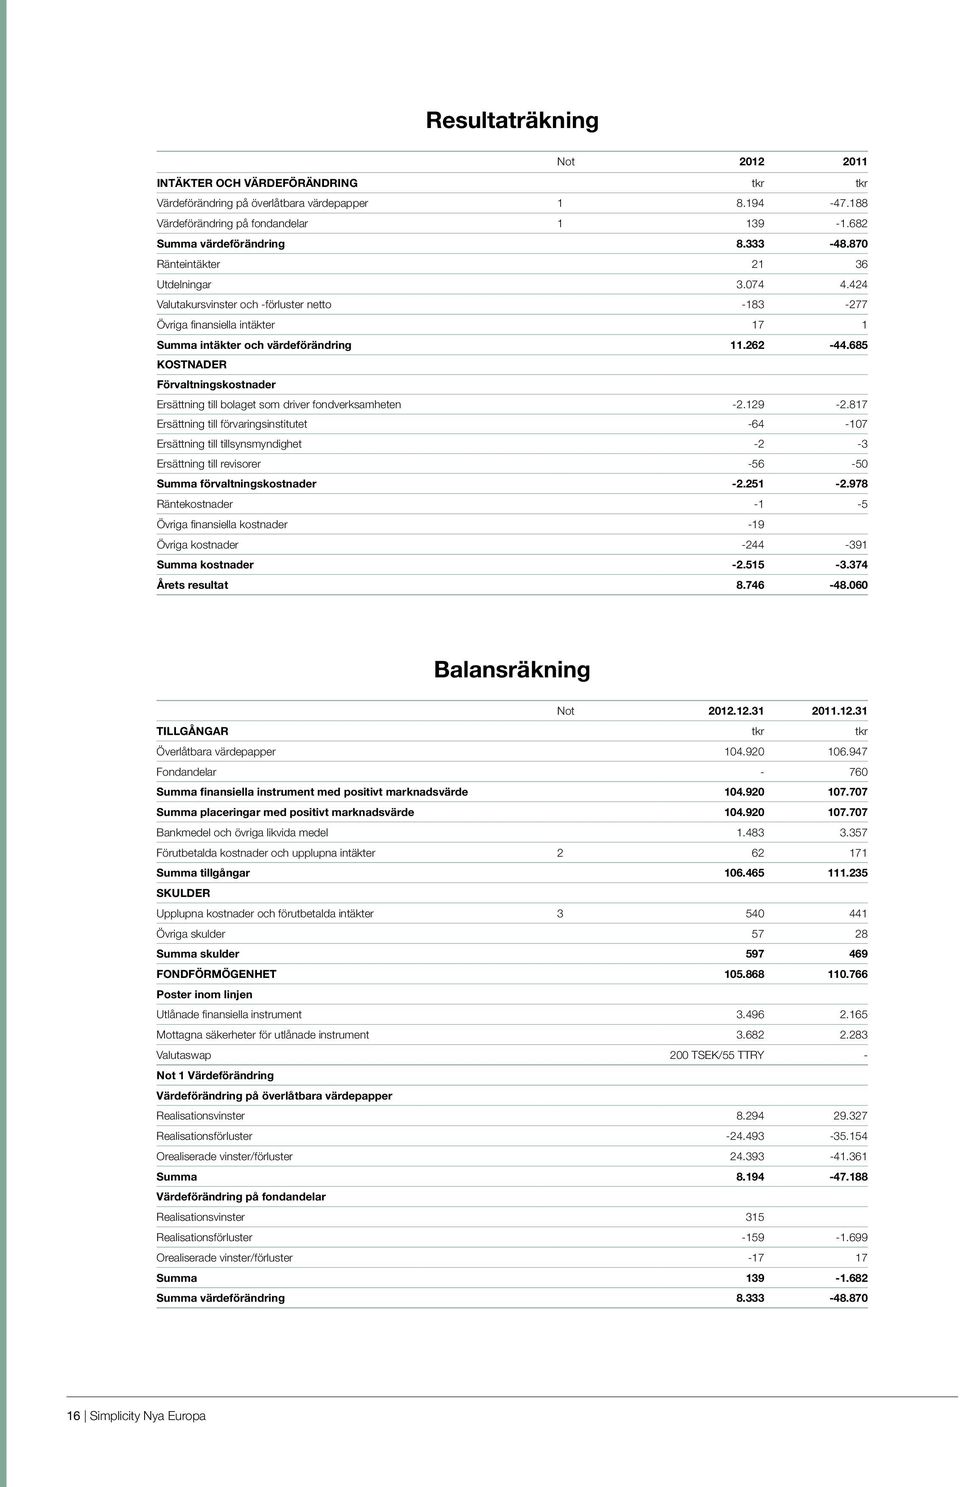 685 KOSTNADER Förvaltningskostnader Ersättning till bolaget som driver fondverksamheten -2.129-2.